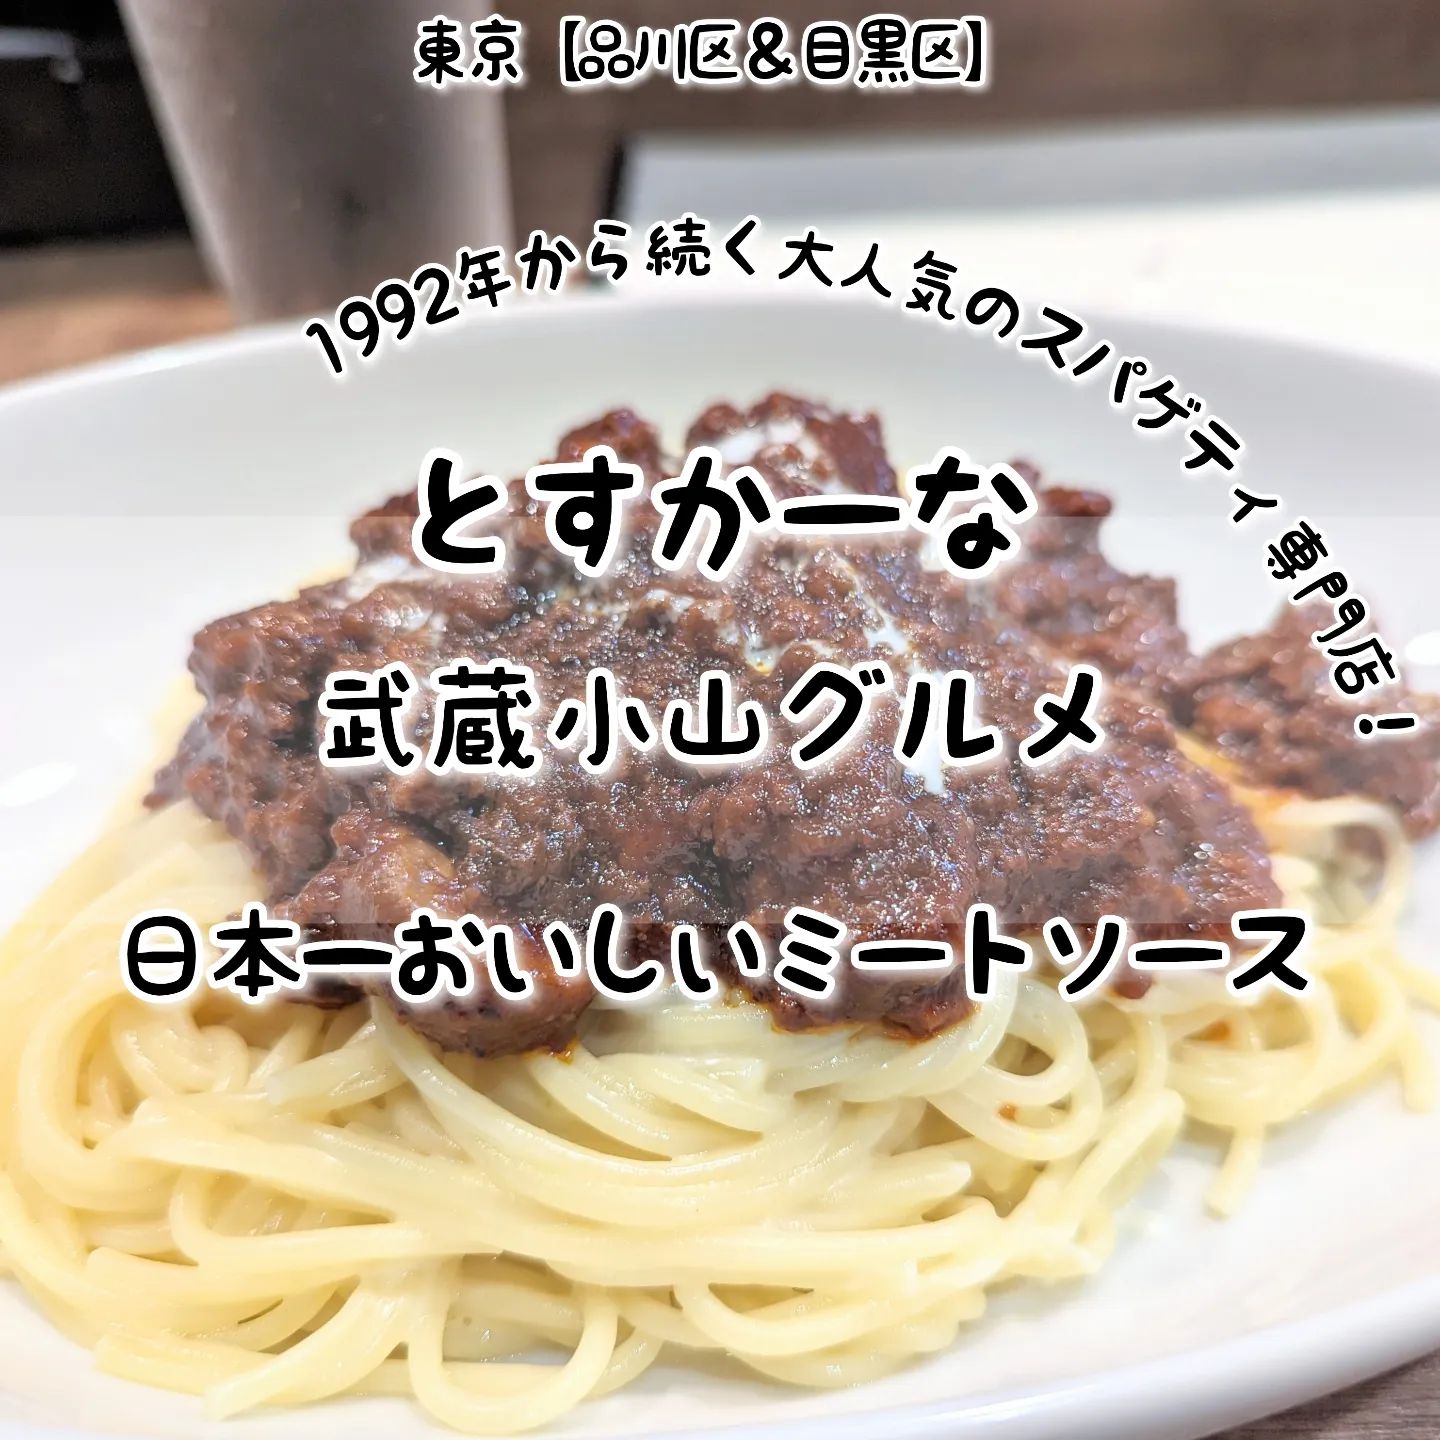 #武蔵小山グルメ情報 #とすかーな #日本一おいしいミートソース ごほうび系－－☆－－いやし系オールド系－－☆－－ニュー系おもいで度－－☆－－ #侍猫度濃厚でコクうまな存在感のミートソースが美味しい！肉と野菜の旨味が濃厚に広がりつつもトマトが強すぎない日本一美味しいミートソースに仕上げてきております！こちらのお店は、1992年から続くもはや有名すぎて言うまでもない大人気スパゲティ専門店でございます。お店に入りますと、テーブル席と店内奥にカウンター席がございまして、シンプルな空間が広がっております。メニューを見ていただきますと、定番メニュー以外にも季節のメニューやら魅力的なパスタがたくさんございまして、毎回何を食べようか悩んでしまうわけでございますね！とすかーな@toscana_musashikoyama場所は、武蔵小山駅から26号線に向かってロータリーを抜けて進むと左手側にございます。ミスドの近くでございますね。【侍猫に依頼】お店の宣伝やイベント告知などなどPR投稿をご希望の際は、お気軽にDMでお問い合わせください！【侍猫が無料】ただいまフォロワー3000人達成記念として無料でインスタストーリーへのシェアを受付ております！ぜひムサコ近隣のグルメ情報を告知する際にご活用ください！【侍猫を応援】「フォロー」＆「いいね」＆「保存」どうぞよろしくお願いします！ぜひプロフィールからリンクしてる武蔵小山グルメ情報サイトも見てやってください！#武蔵小山 #武蔵小山グルメ #西小山 #戸越銀座 #不動前 #碑文谷 #戸越 #中延 #荏原中延 #目黒本町 #下目黒 #品川区 #品川区グルメ #目黒区 #目黒区グルメ #東京グルメ #東京散歩 #東京観光 #東京デート #東京旅行#tokyotrip #tokyofood #japantravel#イタリアン #武蔵小山イタリアン #東京イタリアン